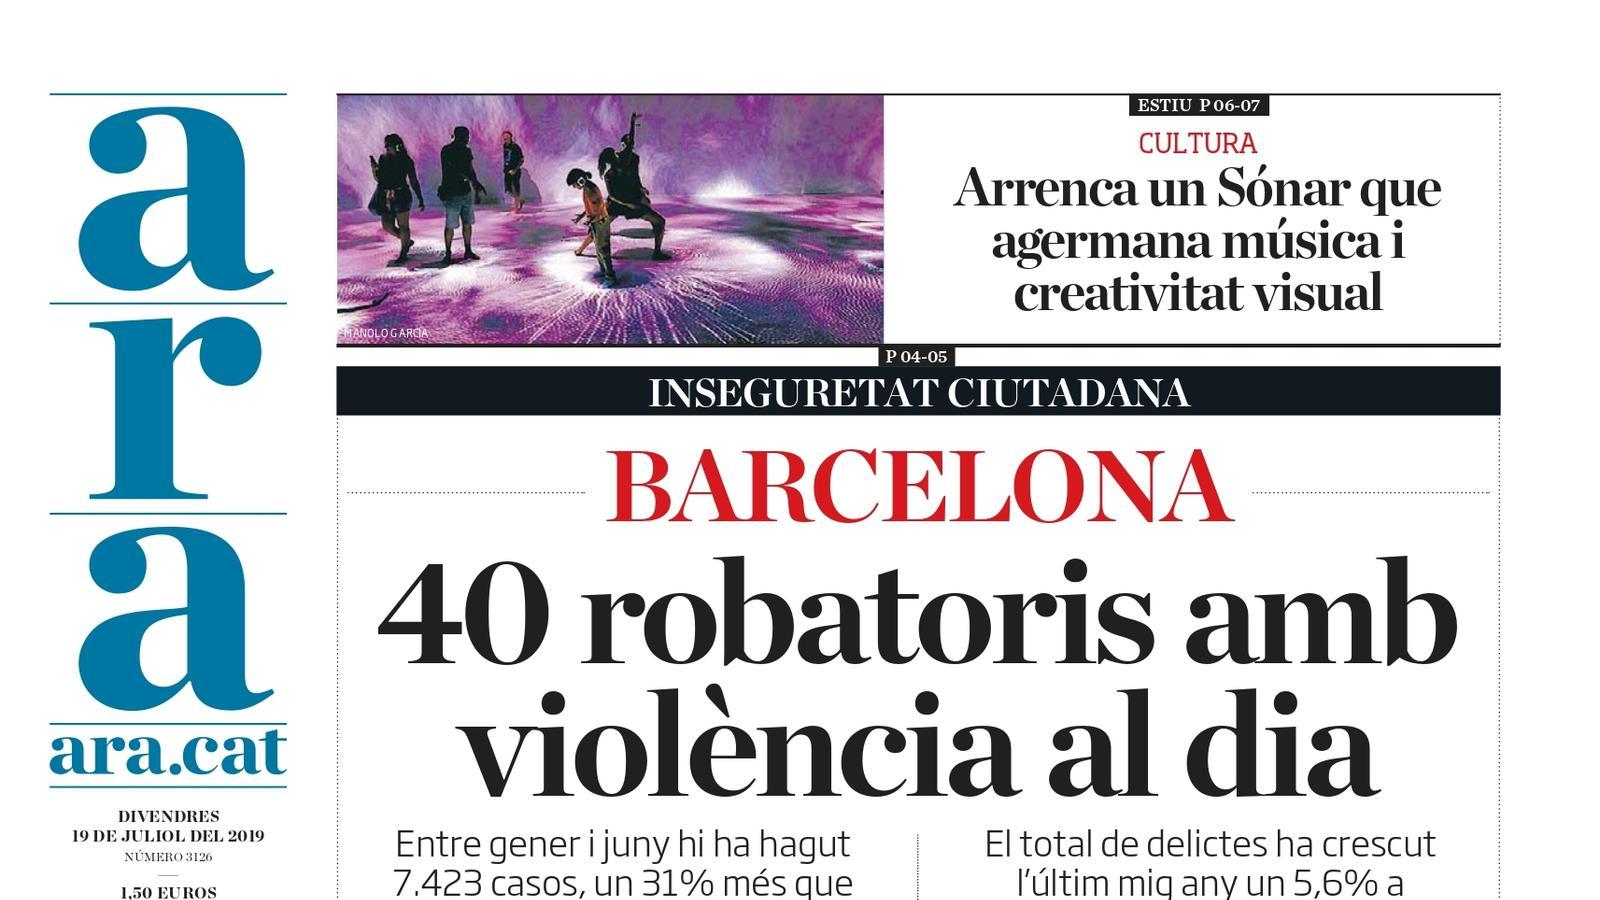 "Barcelona: 40 robatoris amb violència al dia", la portada de l'ARA